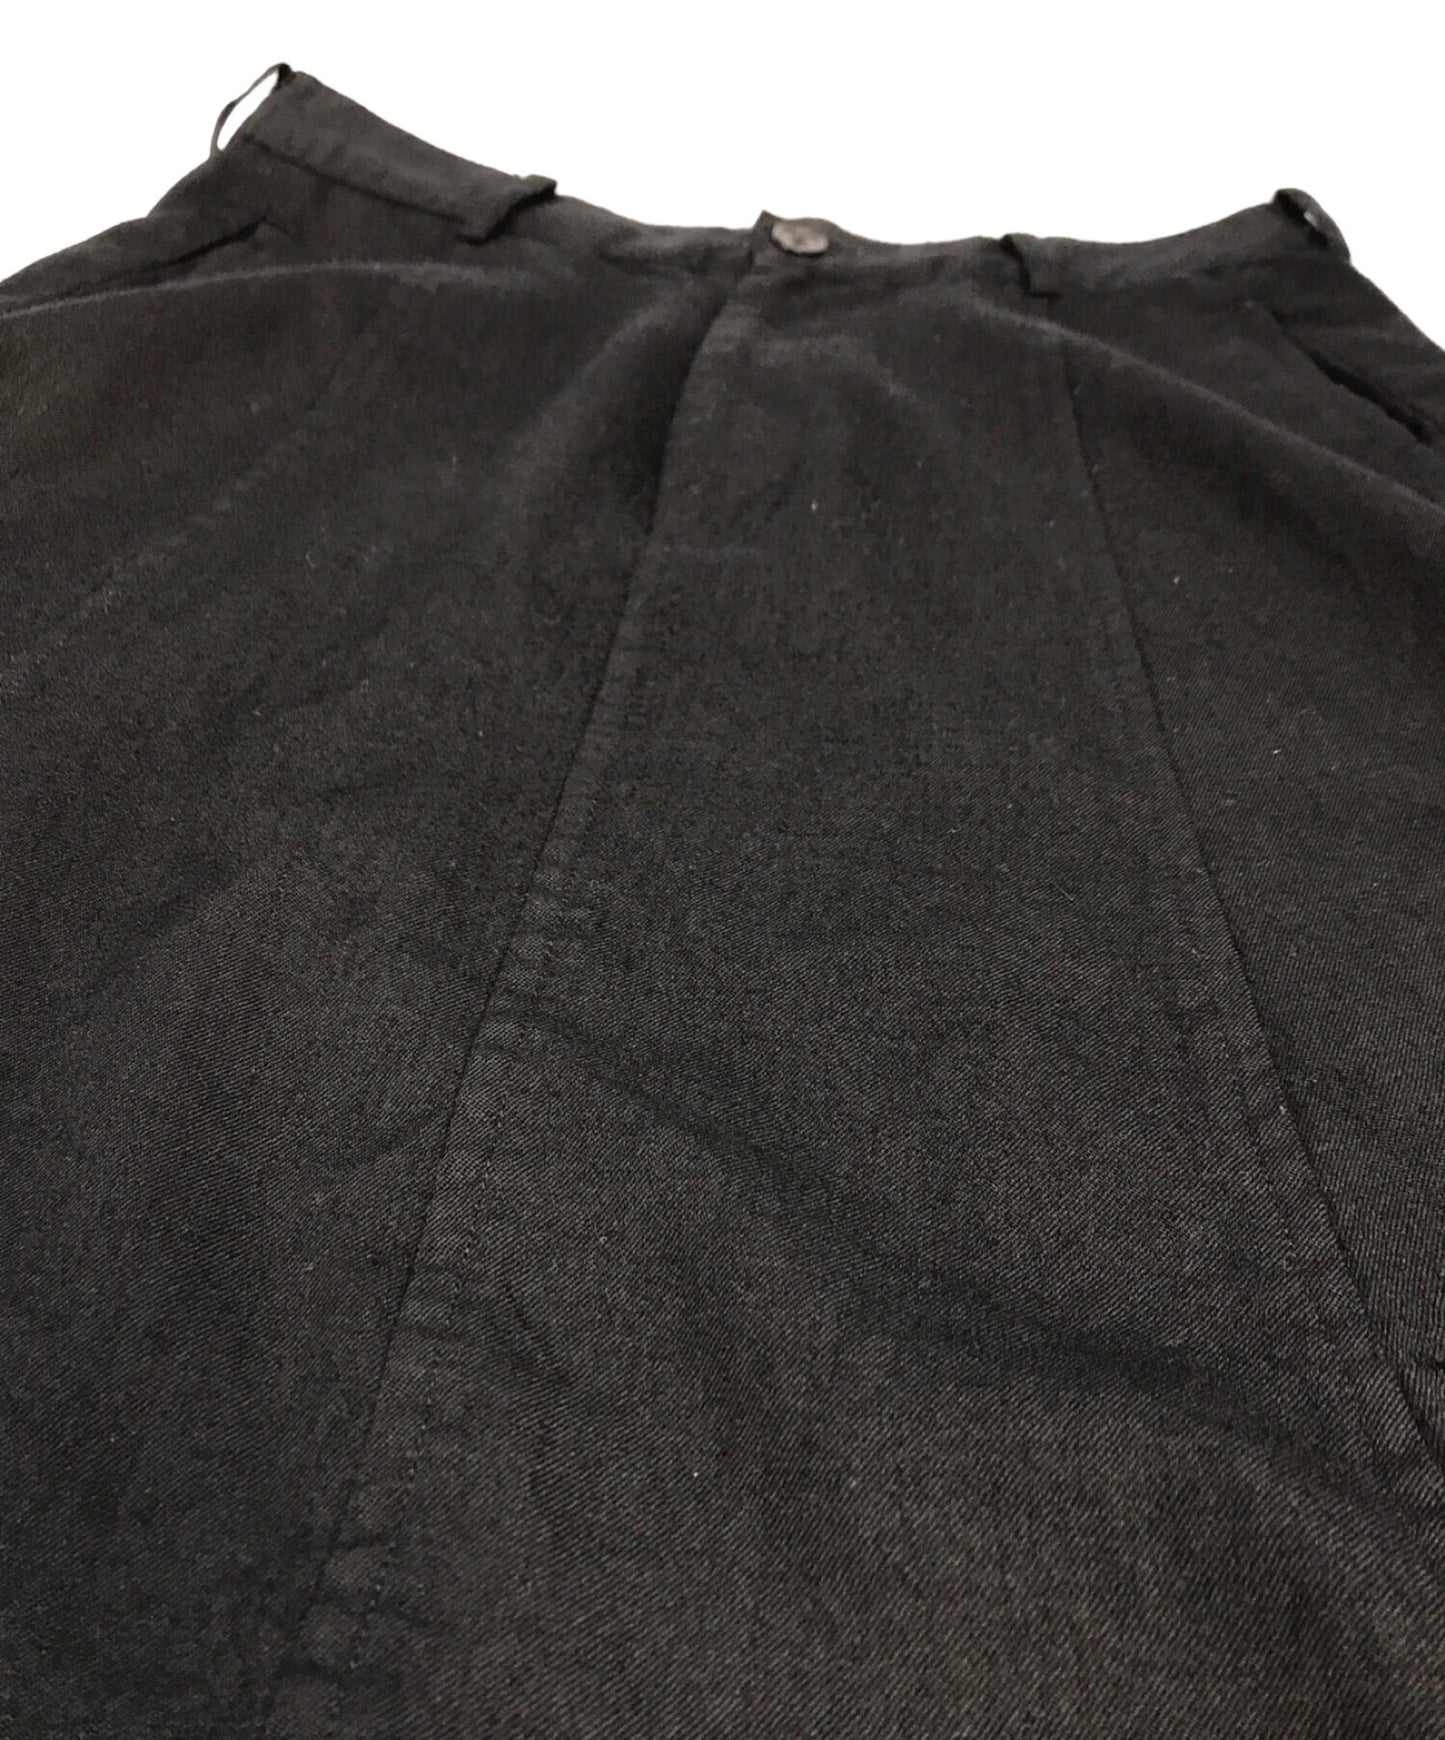 BLACK COMME des GARCONS cross-over sarouel pants 1H-P016